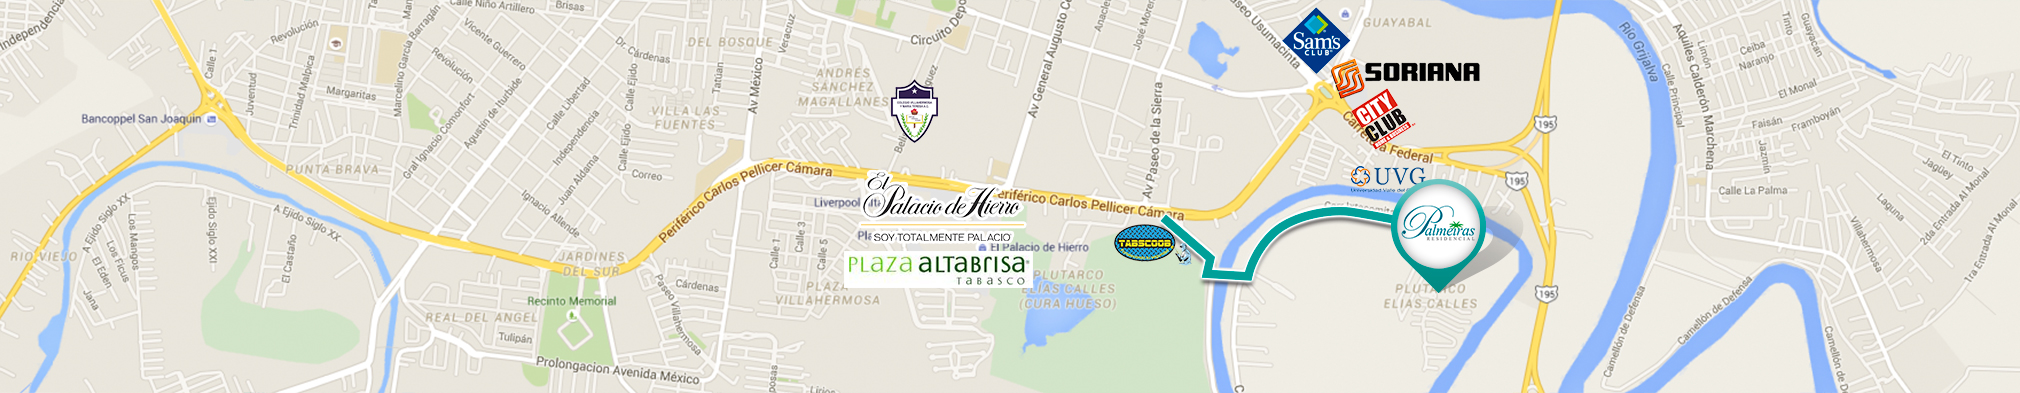 Mapa - Palmeiras